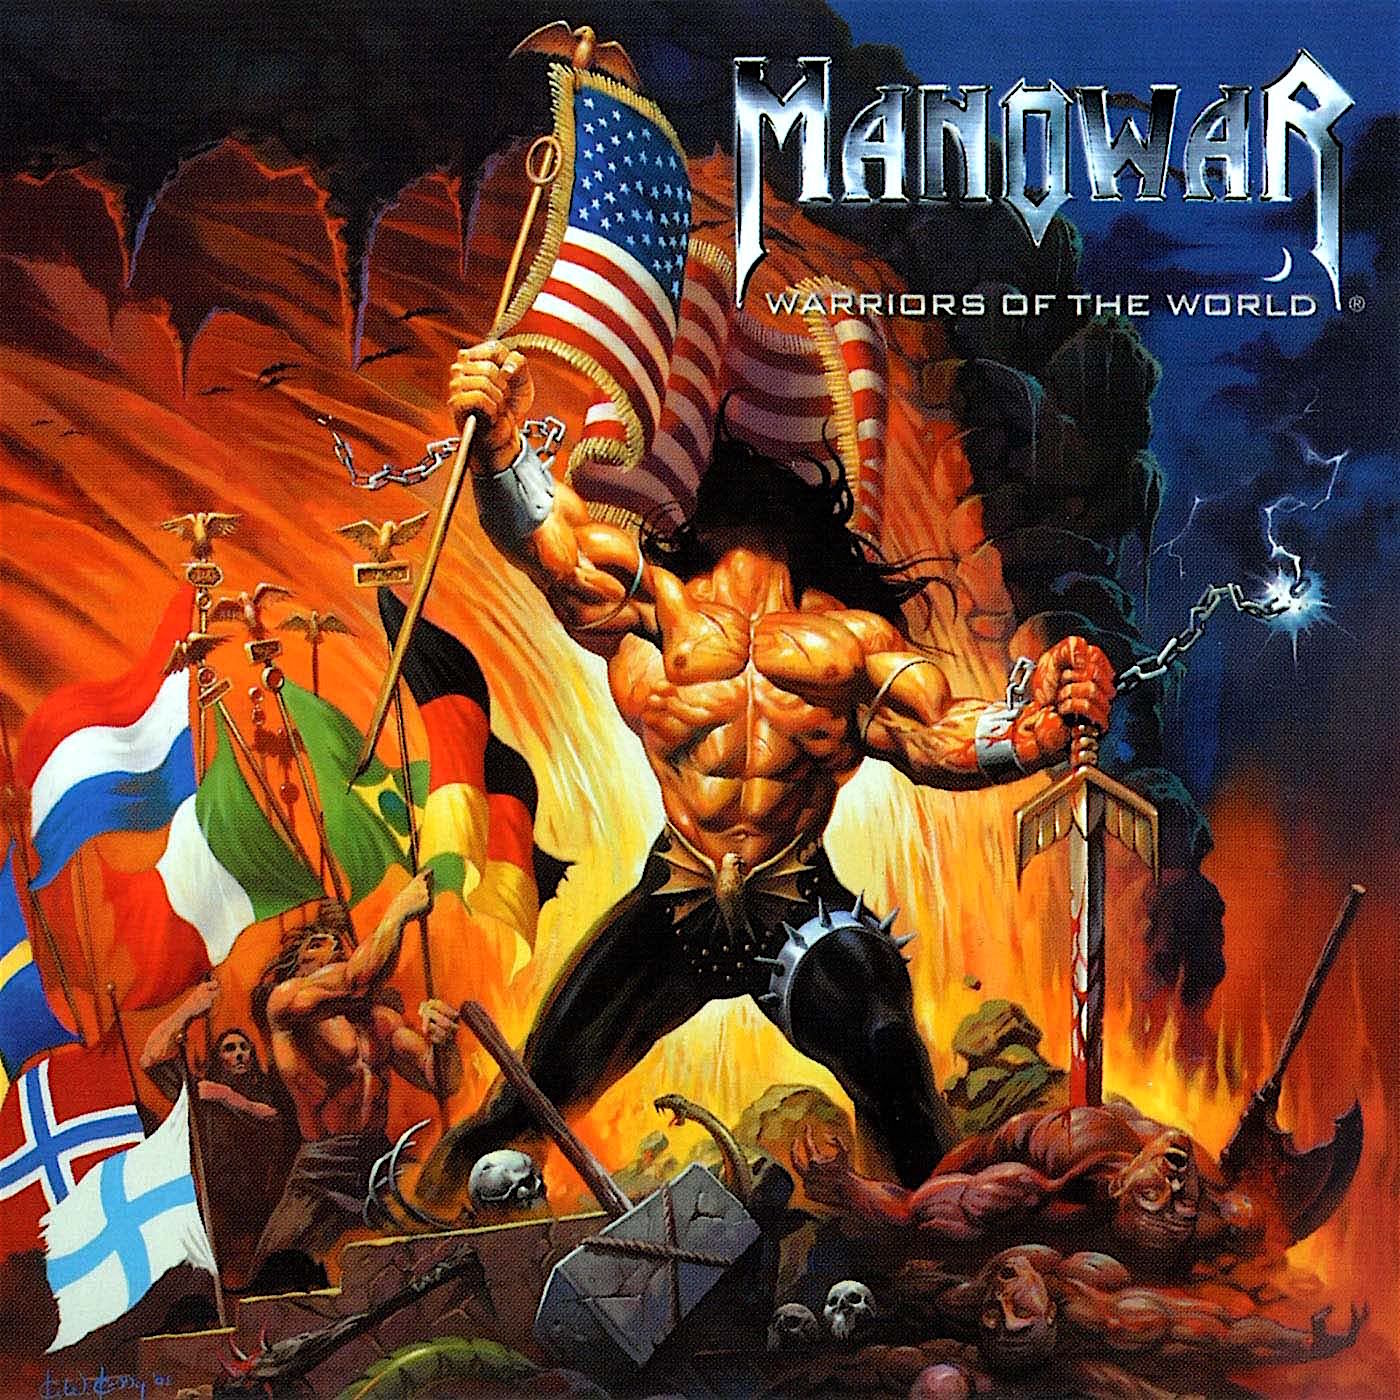 Manowar united. Manowar Warriors of the World. Manowar 2002. Manowar Warriors of the World альбом. Manowar Warriors of the World обложка.